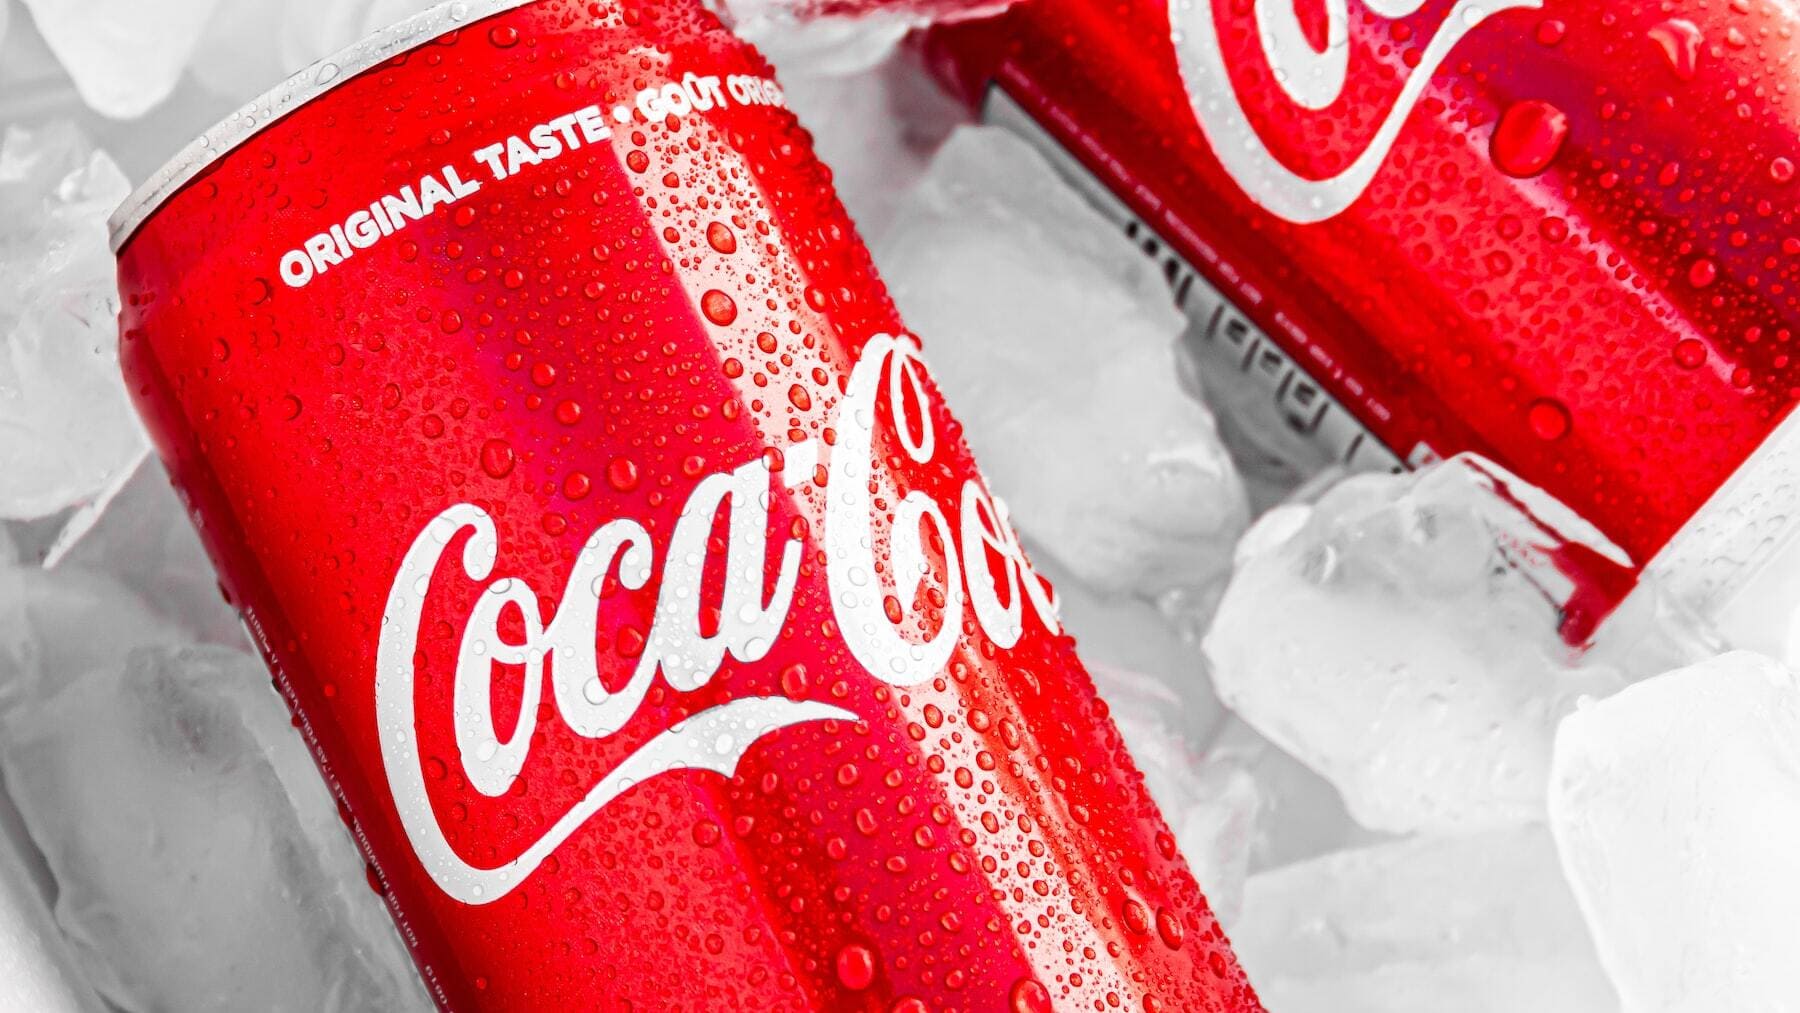 buscan estas latas de Coca-Cola que podrían valer 2.000 euros cada una